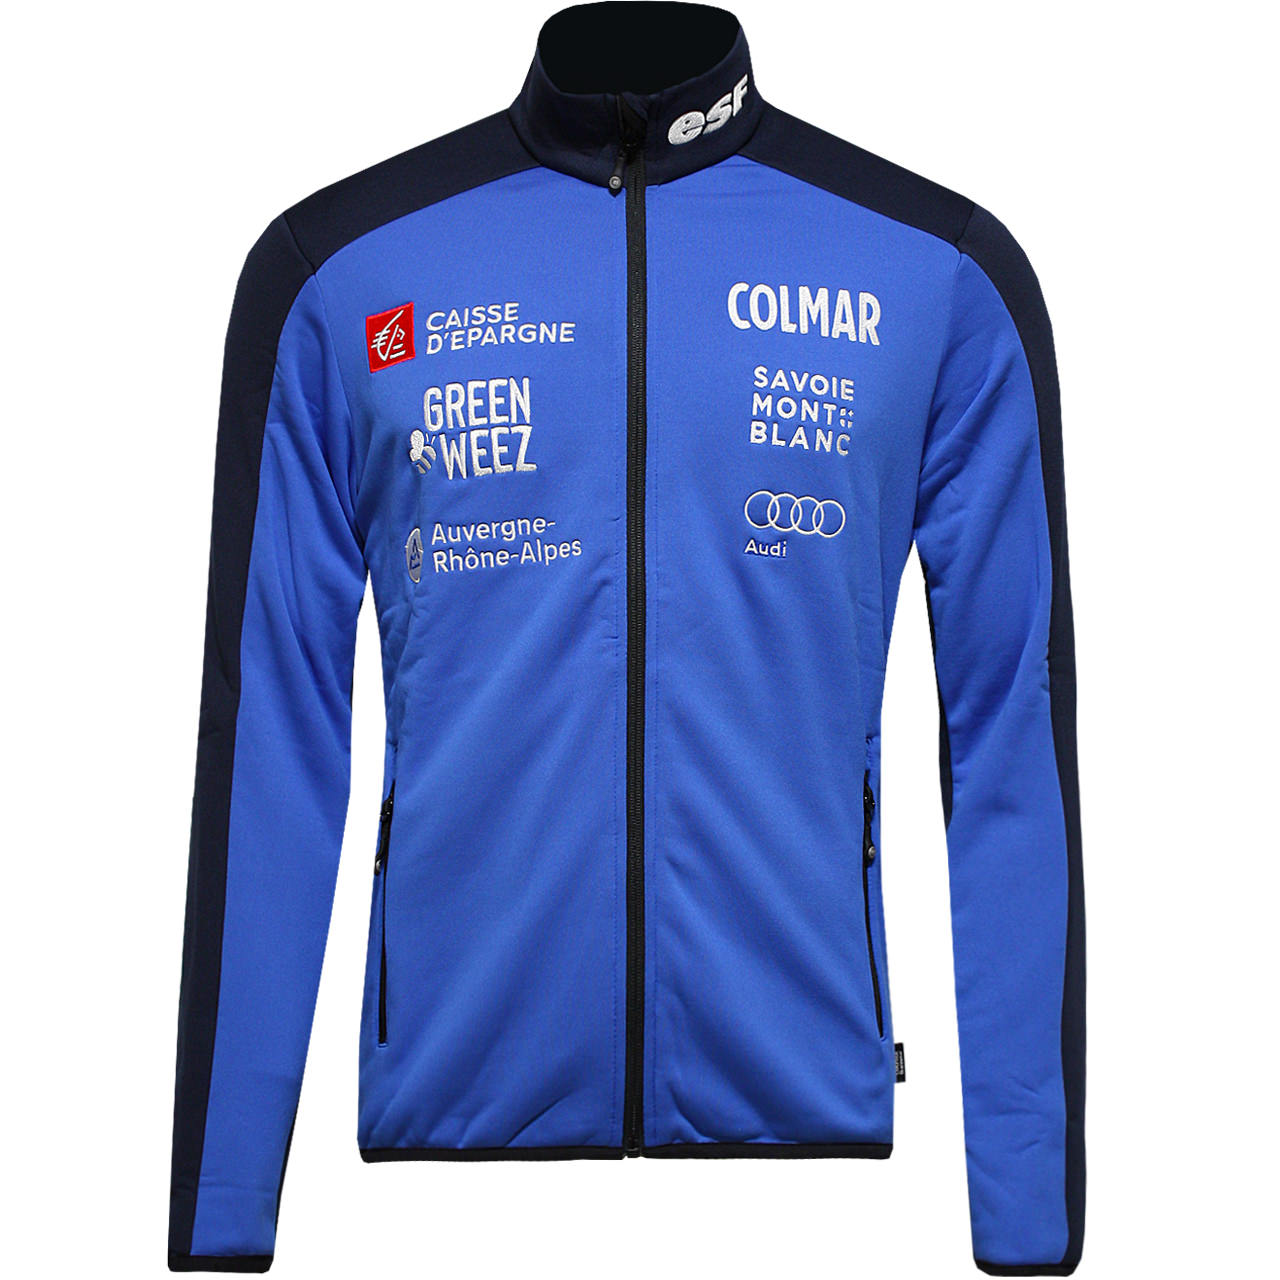 Veste polaire thermique de l’équipe de France de ski Colmar - Bleu abysse